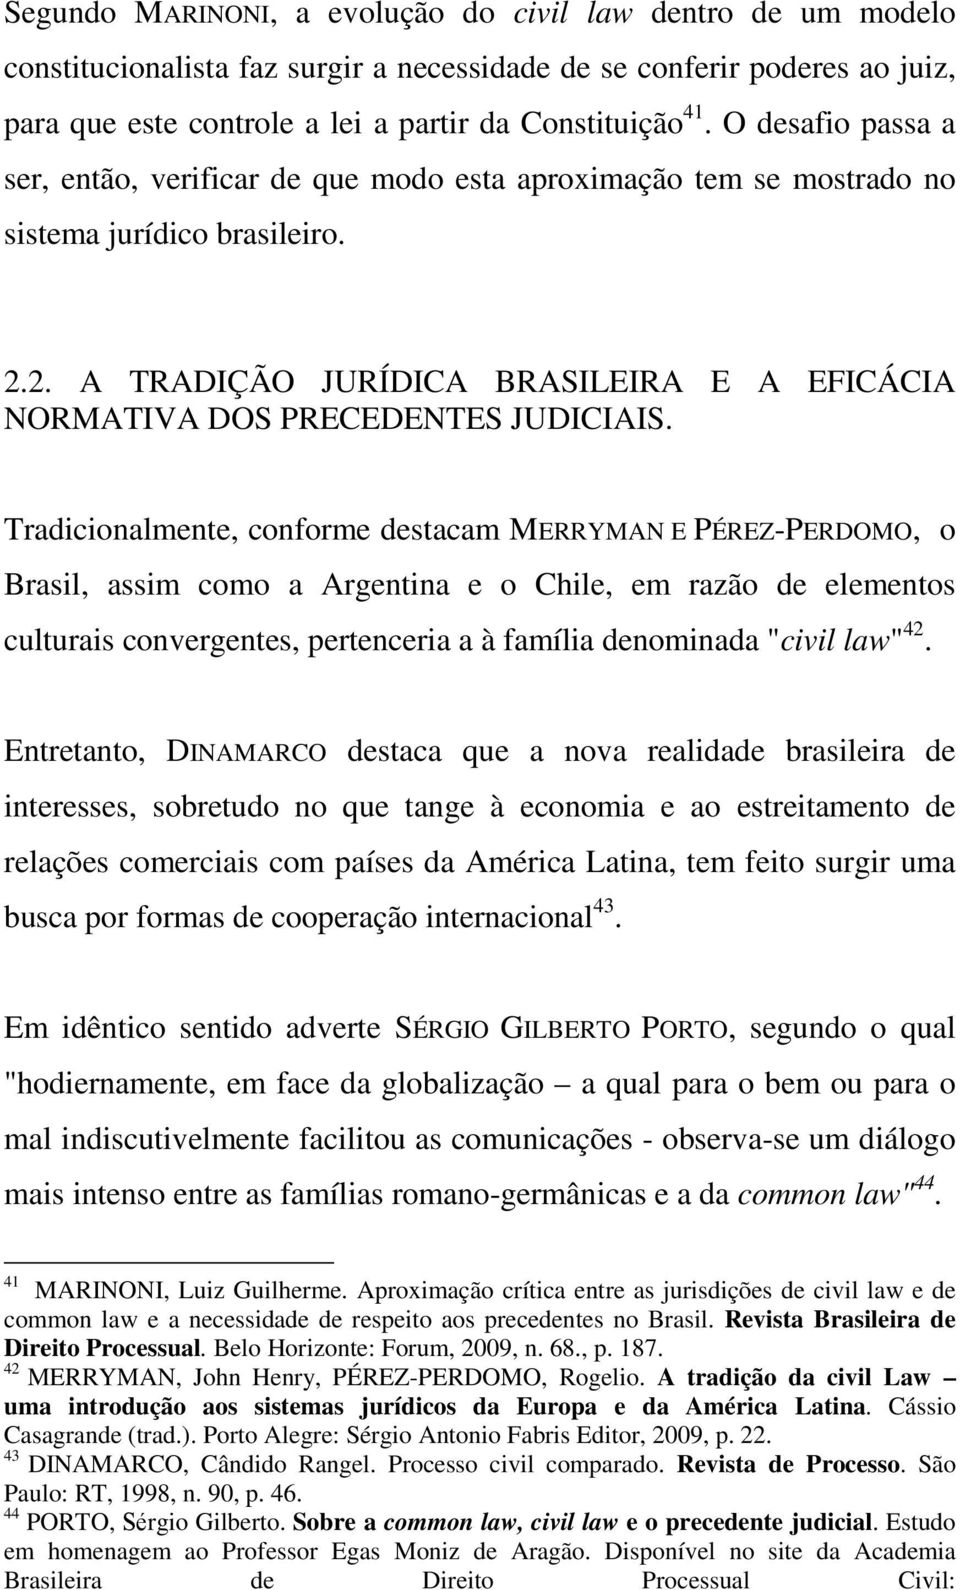 Tradicionalmente, conforme destacam MERRYMAN E PÉREZ-PERDOMO, o Brasil, assim como a Argentina e o Chile, em razão de elementos culturais convergentes, pertenceria a à família denominada "civil law"